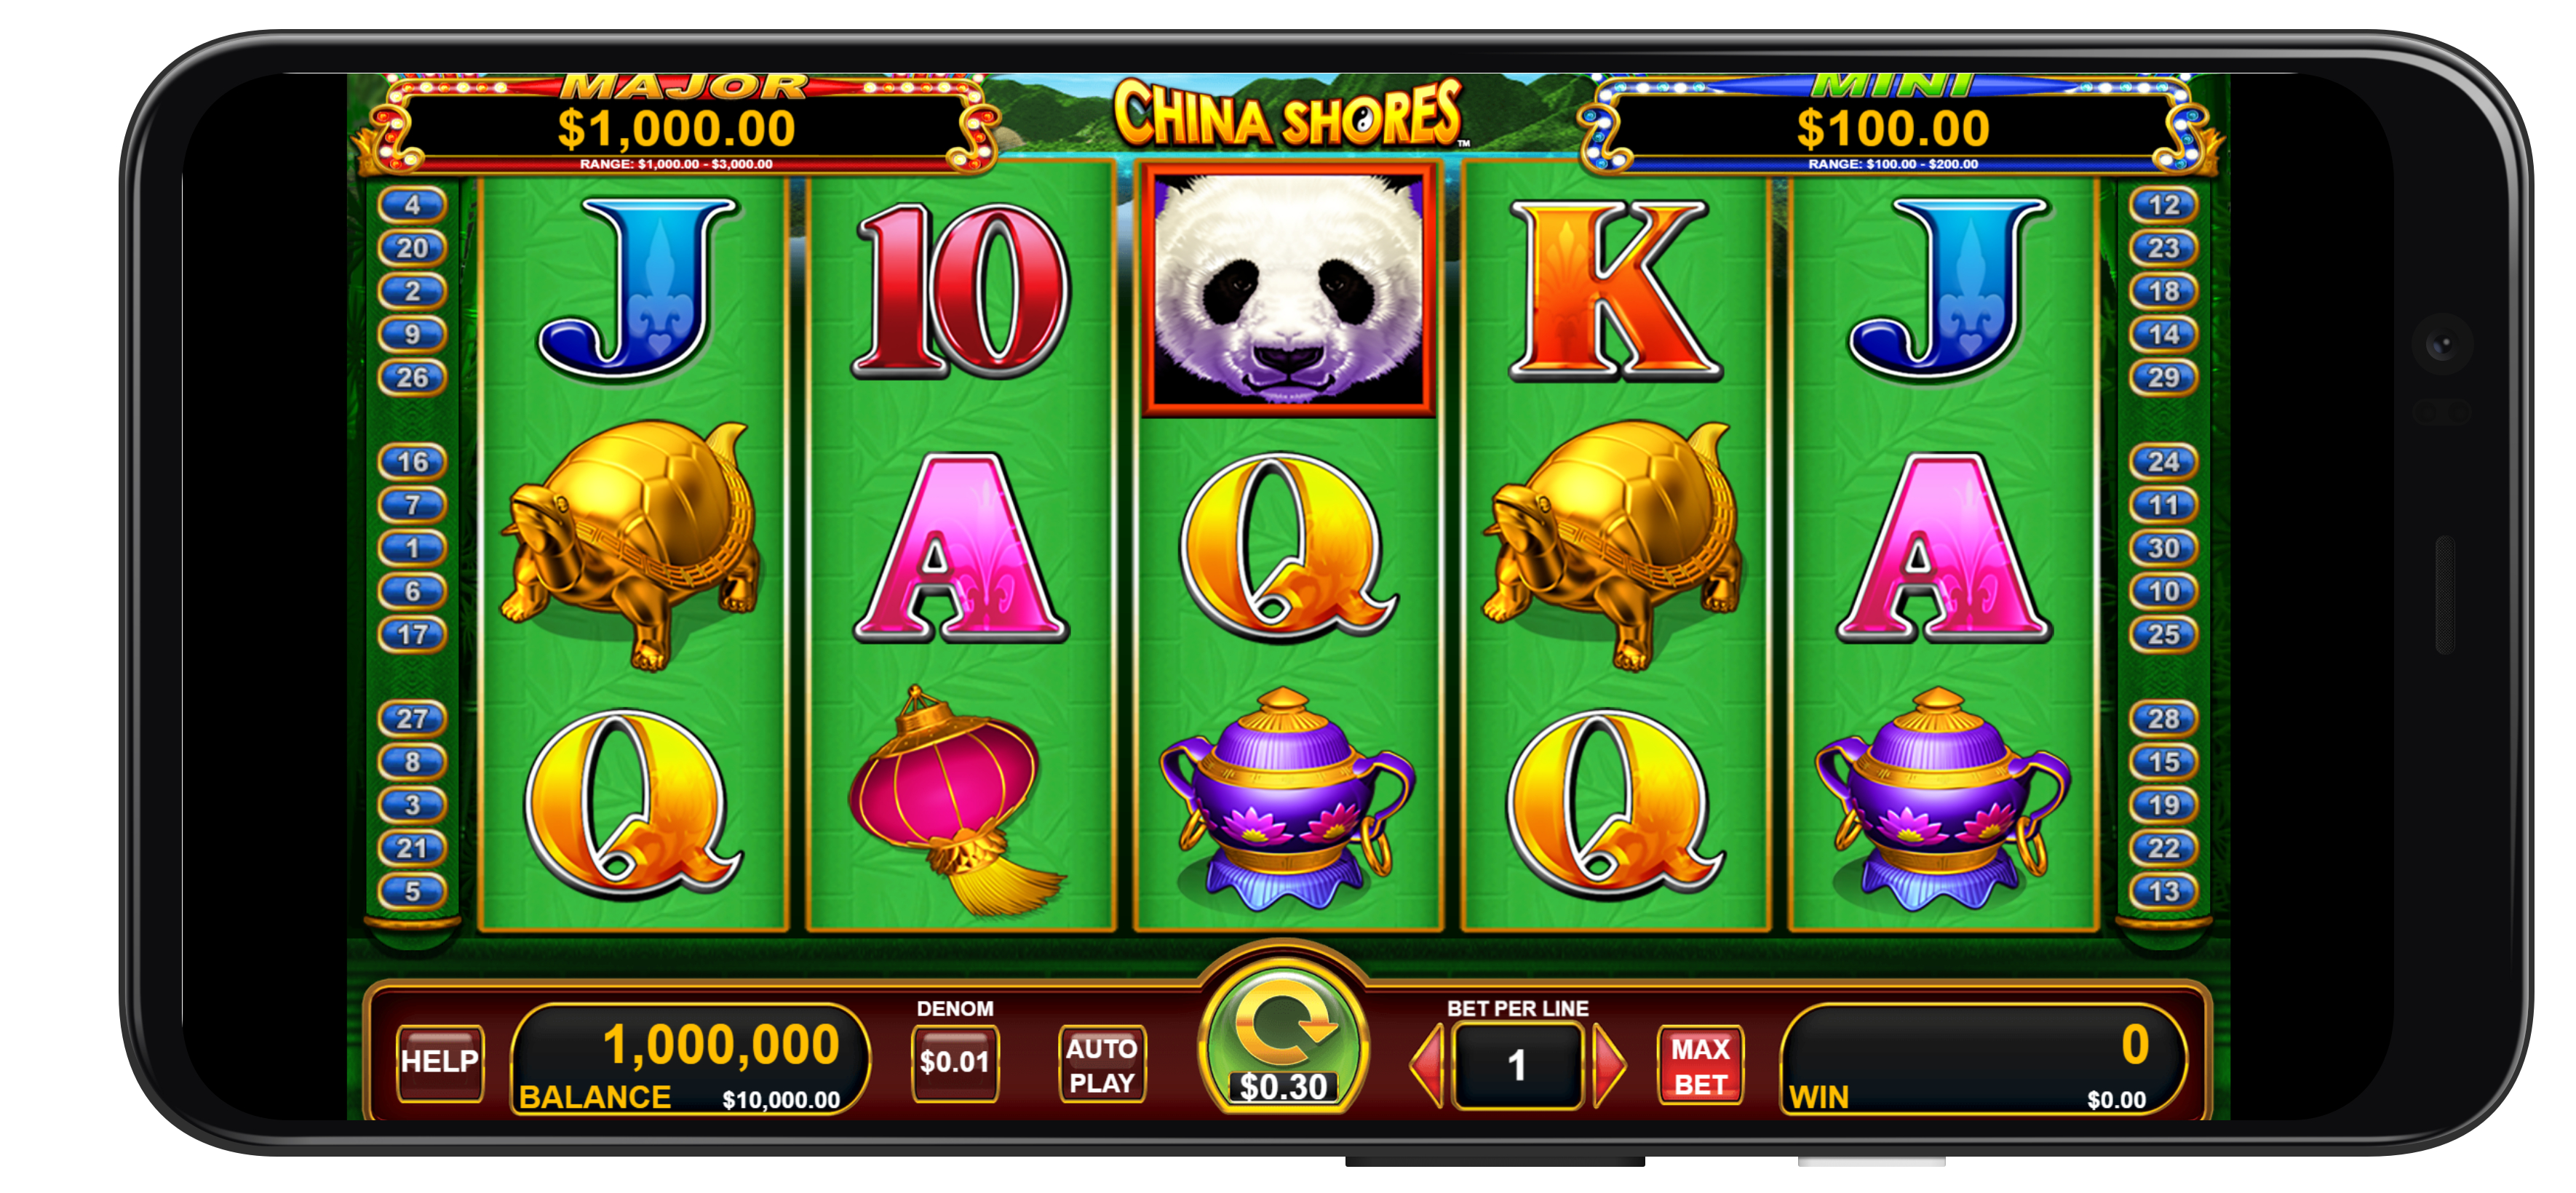 slot machine online casino